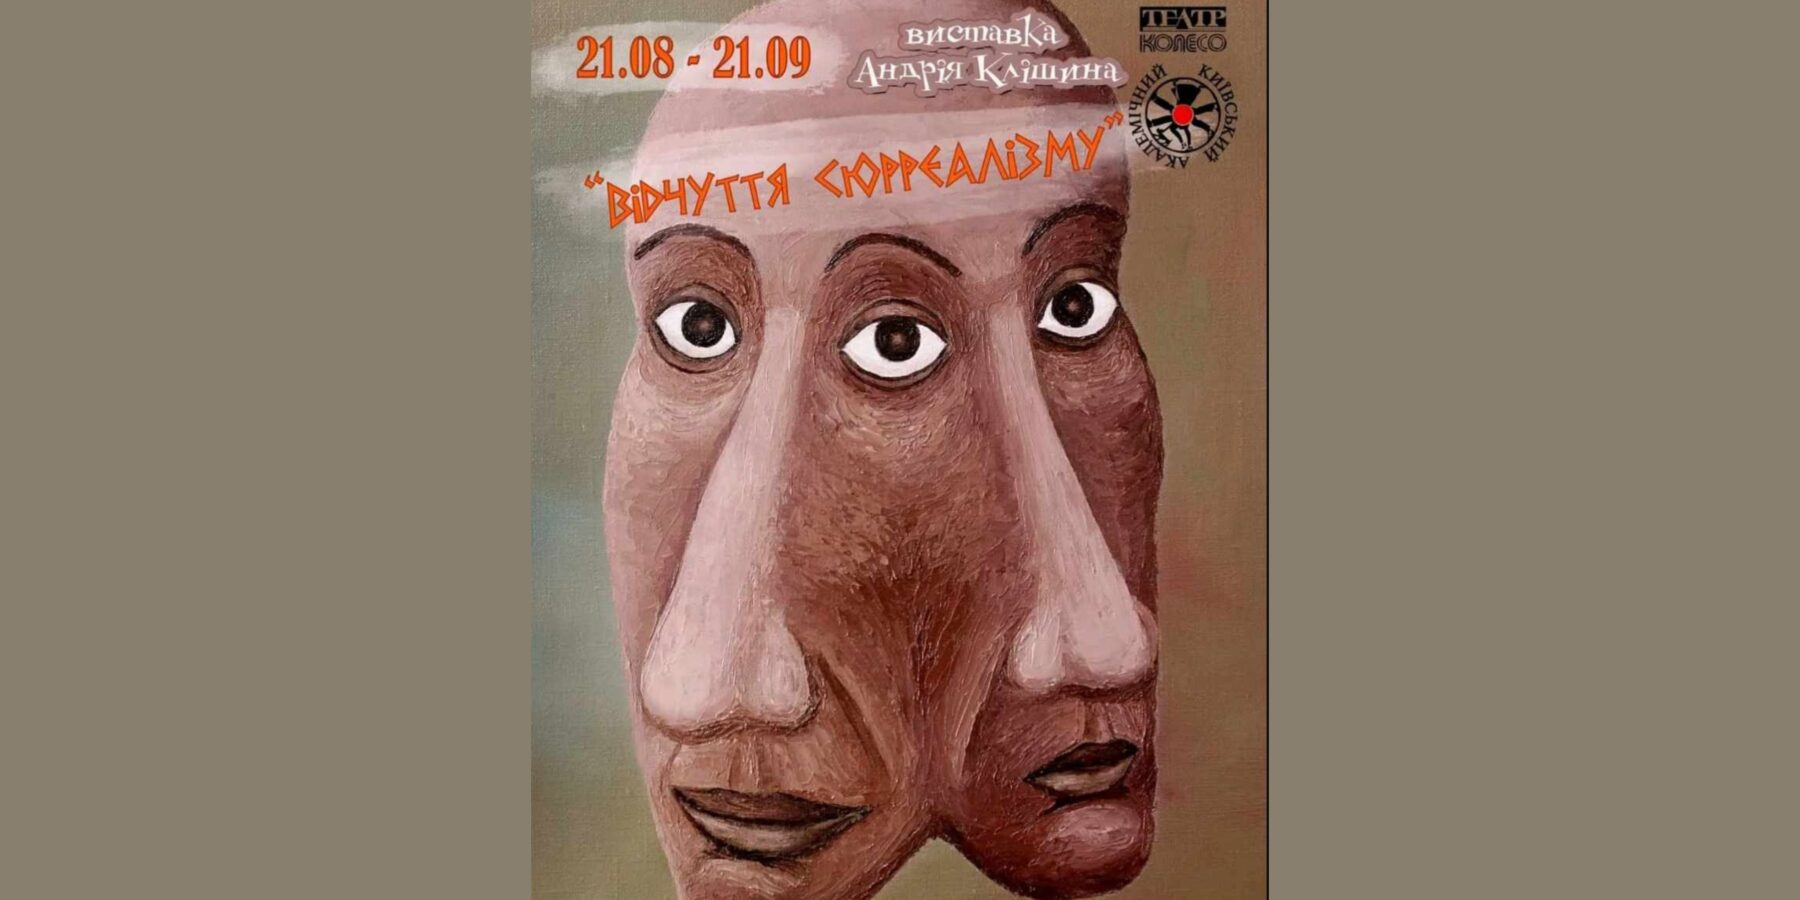 У Києві відкрилася виставка живопису Андрія Клішина "Відчуття сюрреалізму"